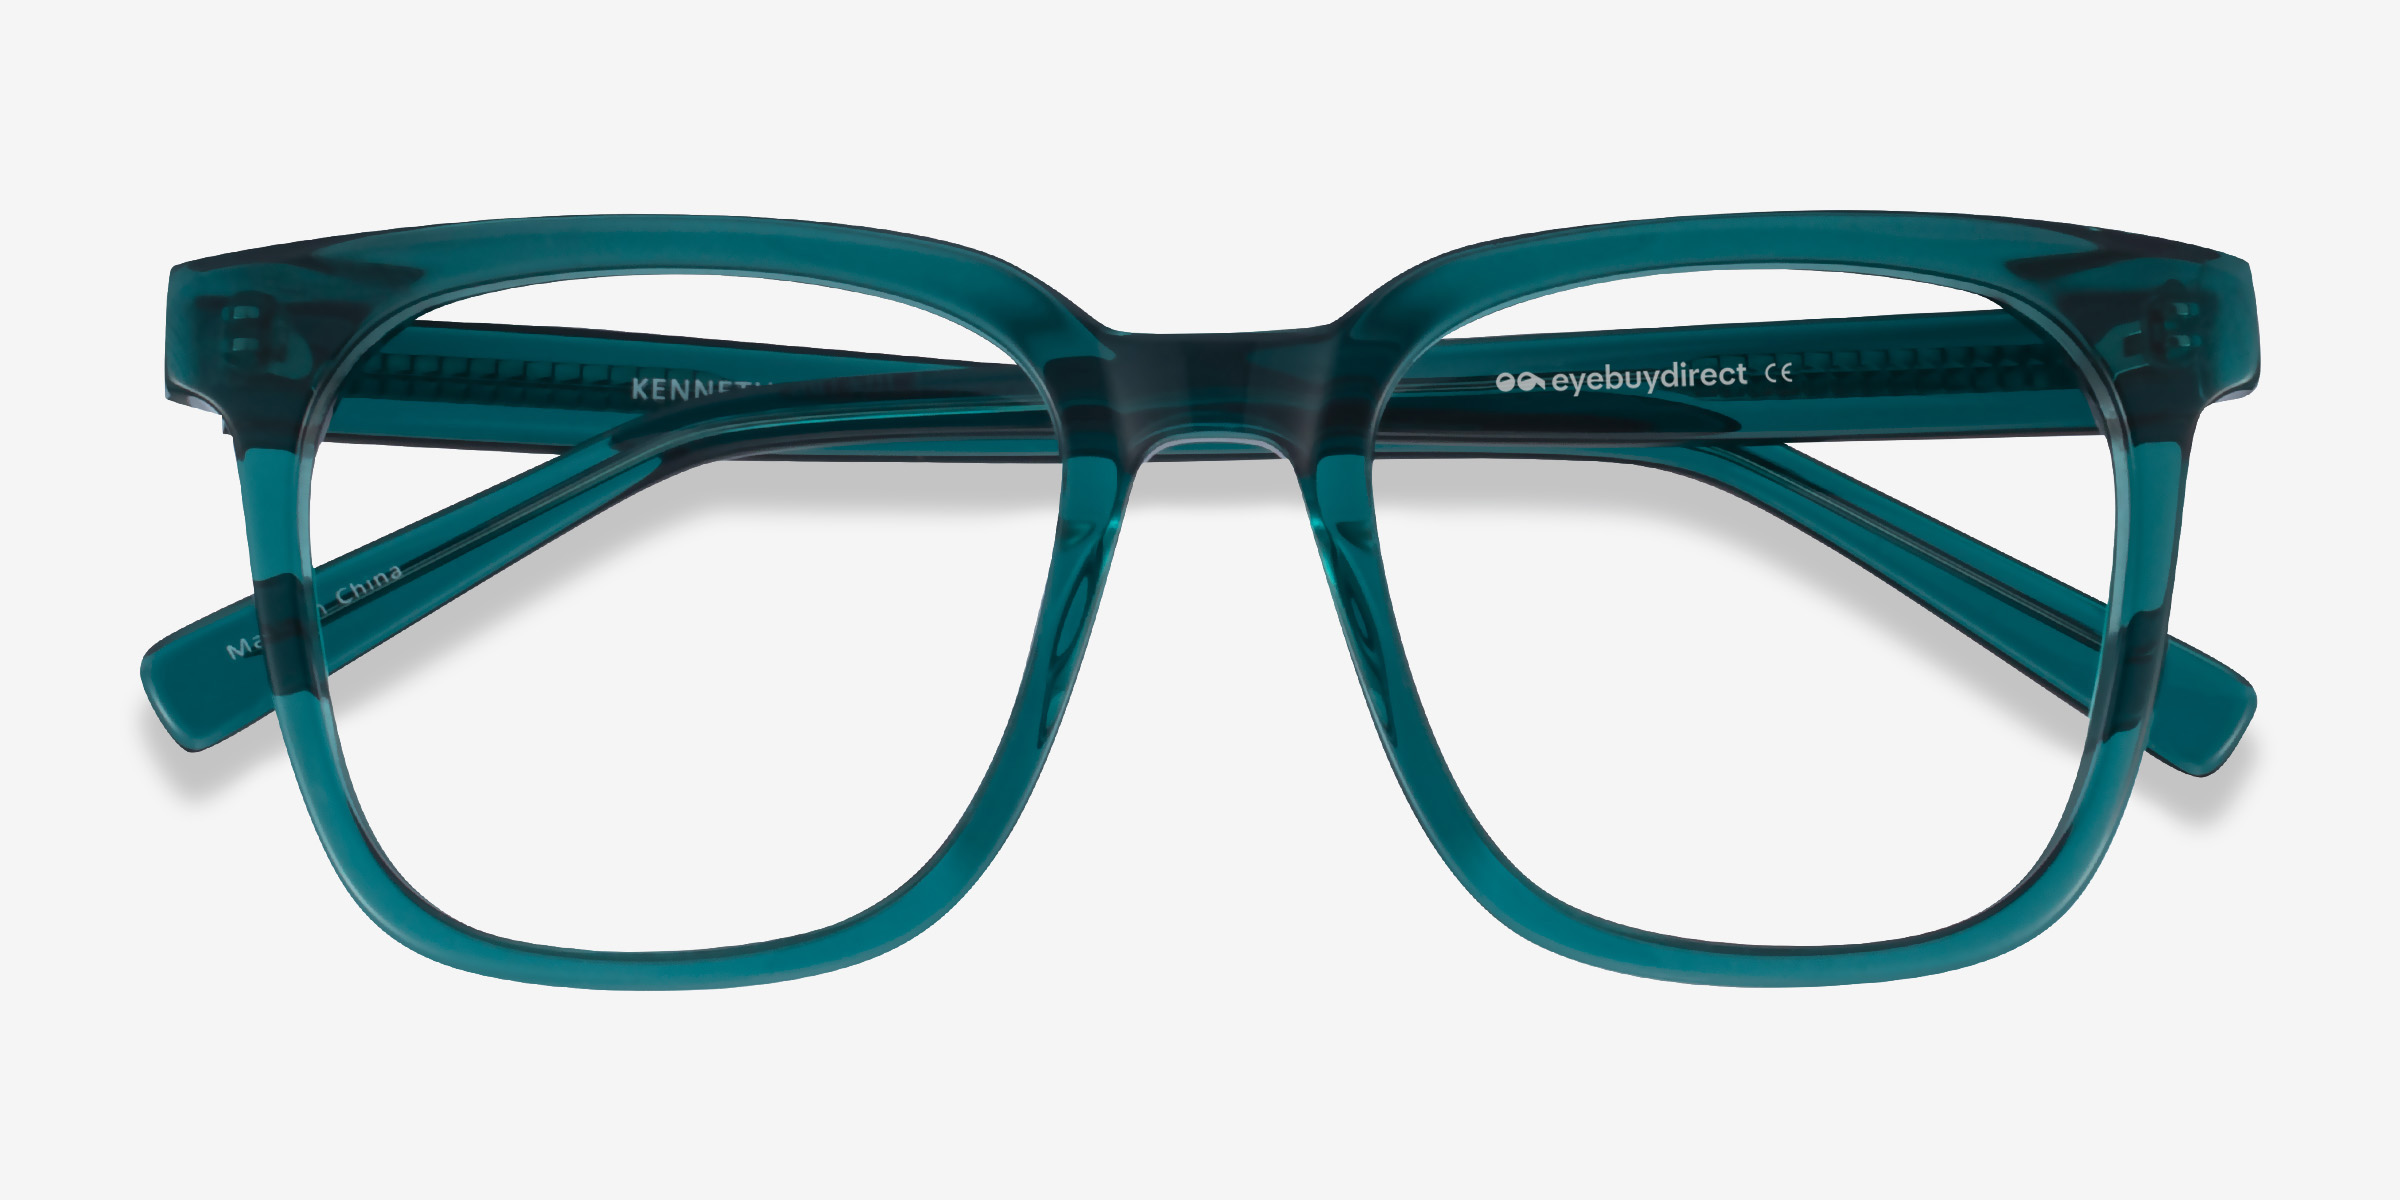 Kenneth Square Teal Glasses For Men Eyebuydirect